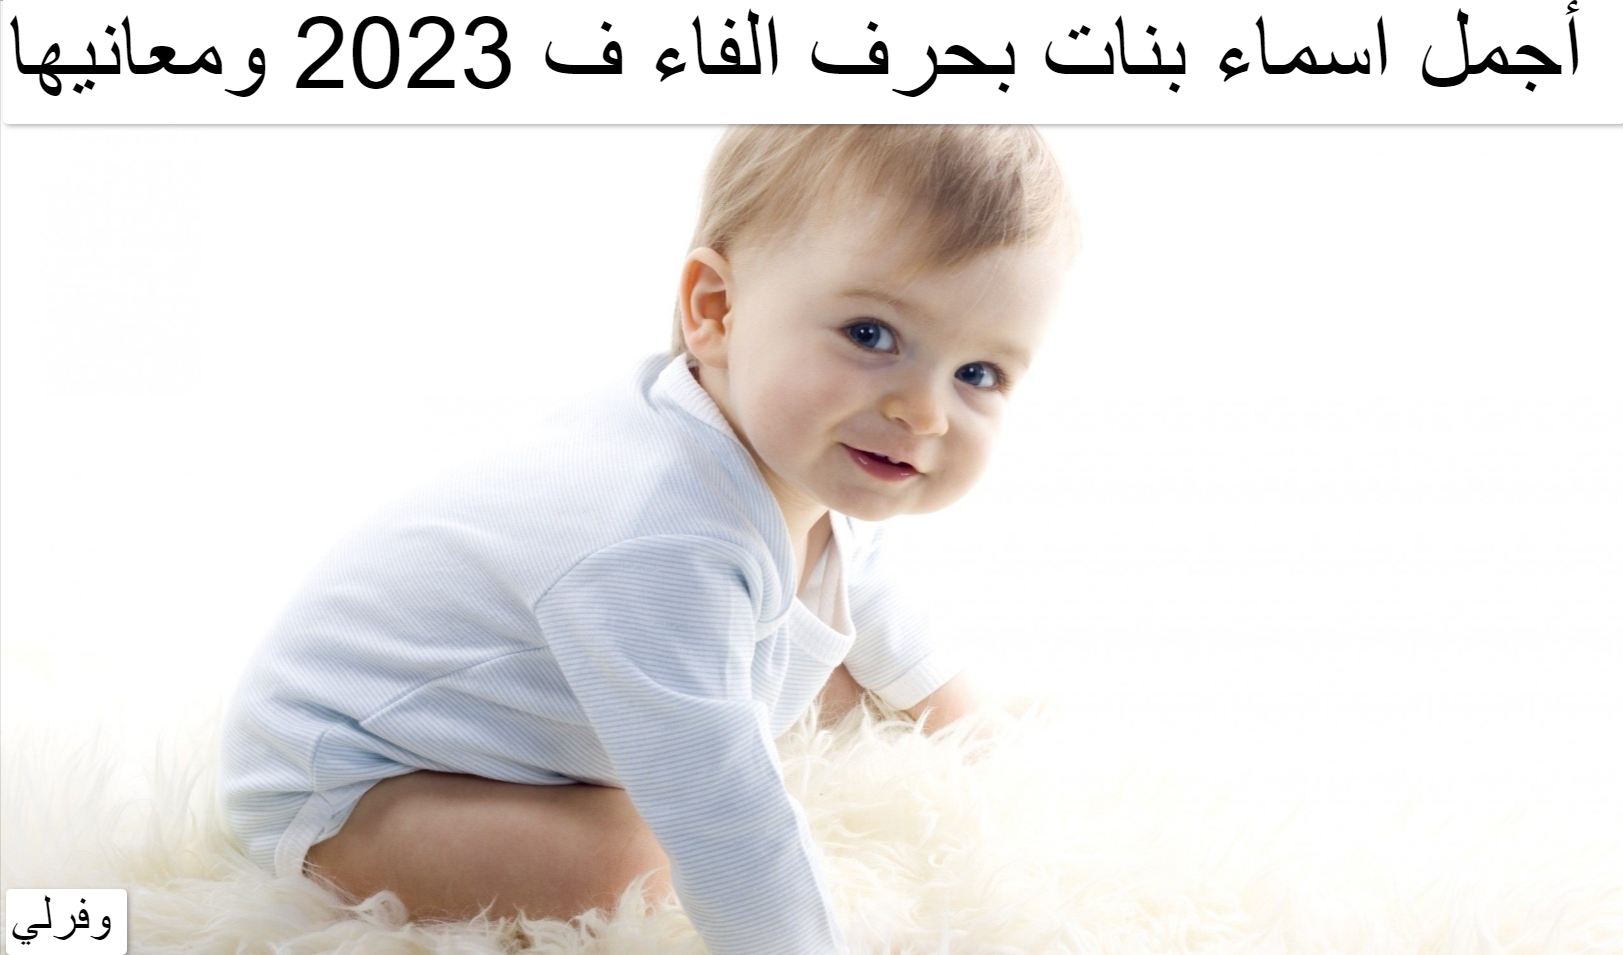 أجمل اسماء بنات بحرف الفاء ف 2023 ومعانيها